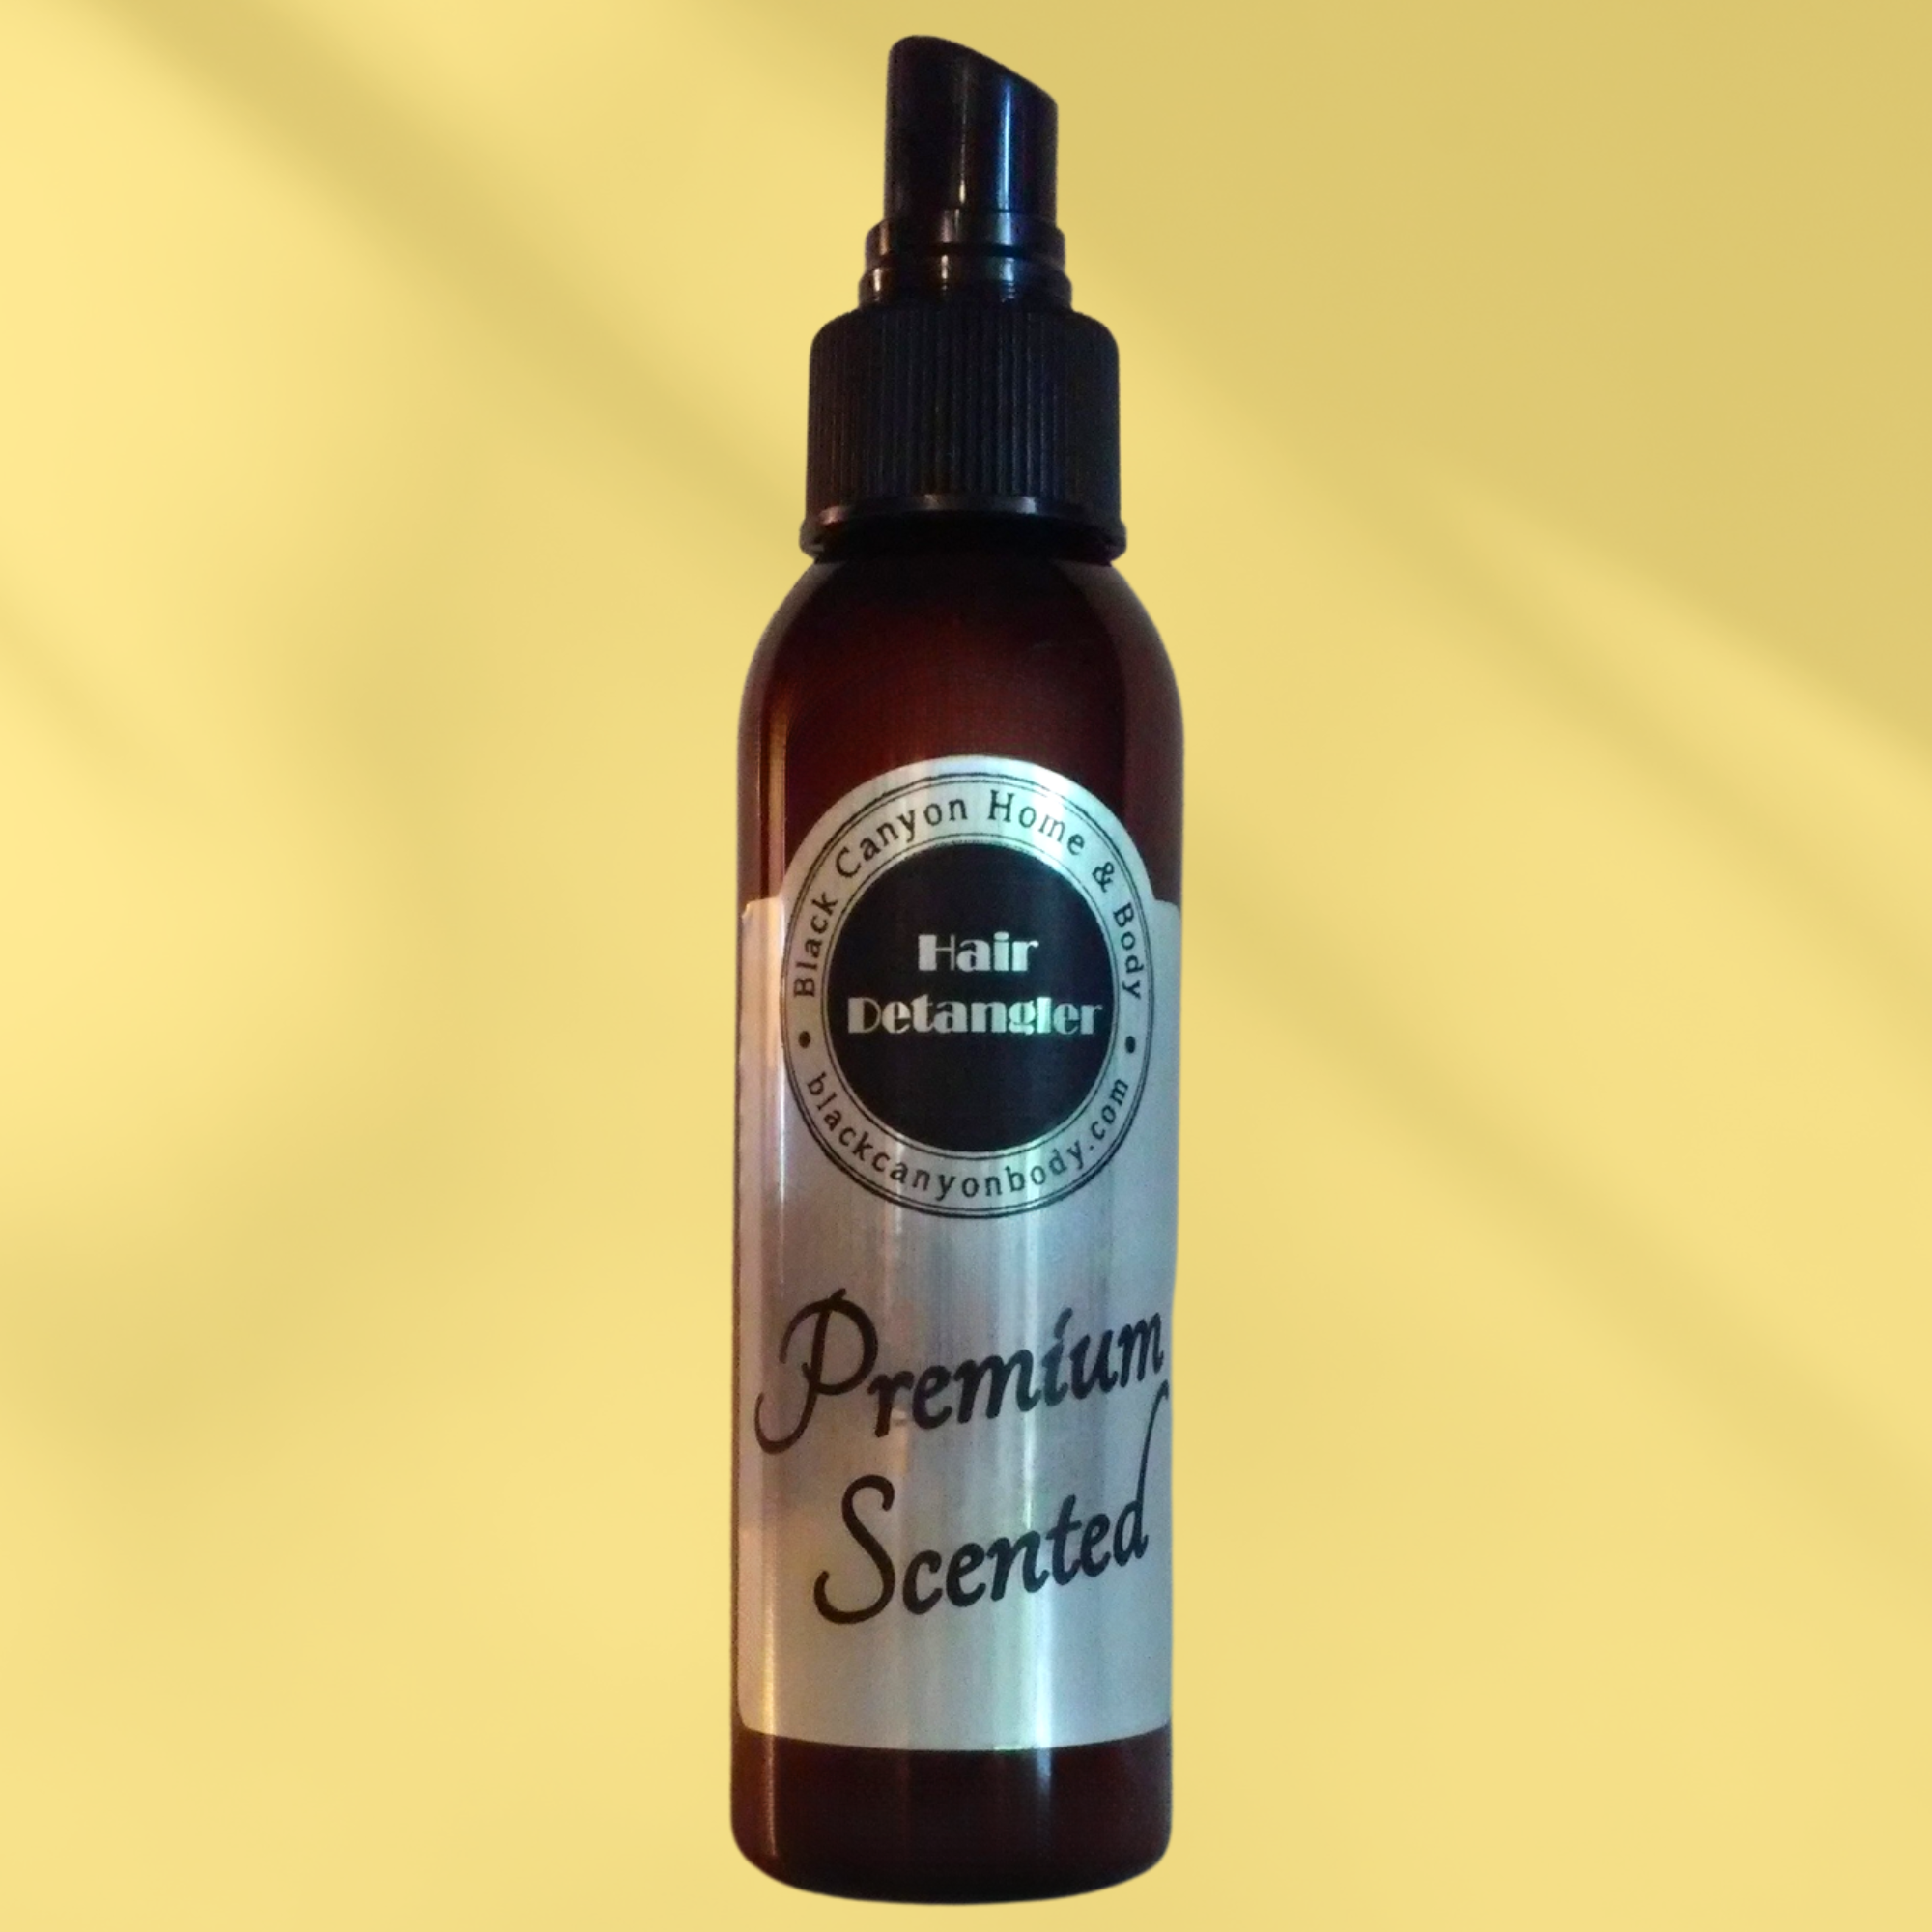 Black Canyon Green Tea & Lemongrass Scented Hair Detangler Spray with Olive Oil